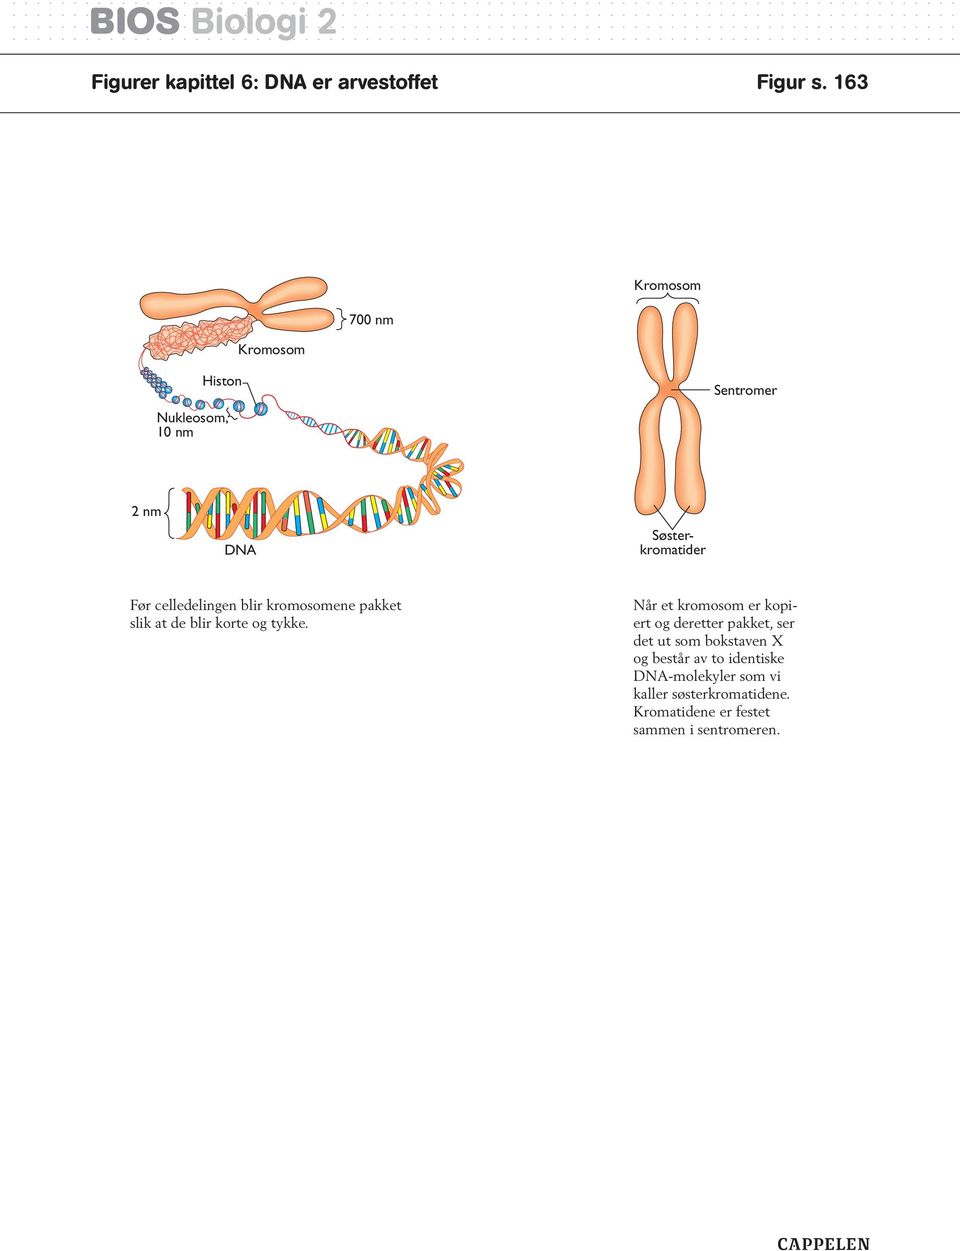 celledelingen blir kromosomene pakket slik at de blir korte og tykke.